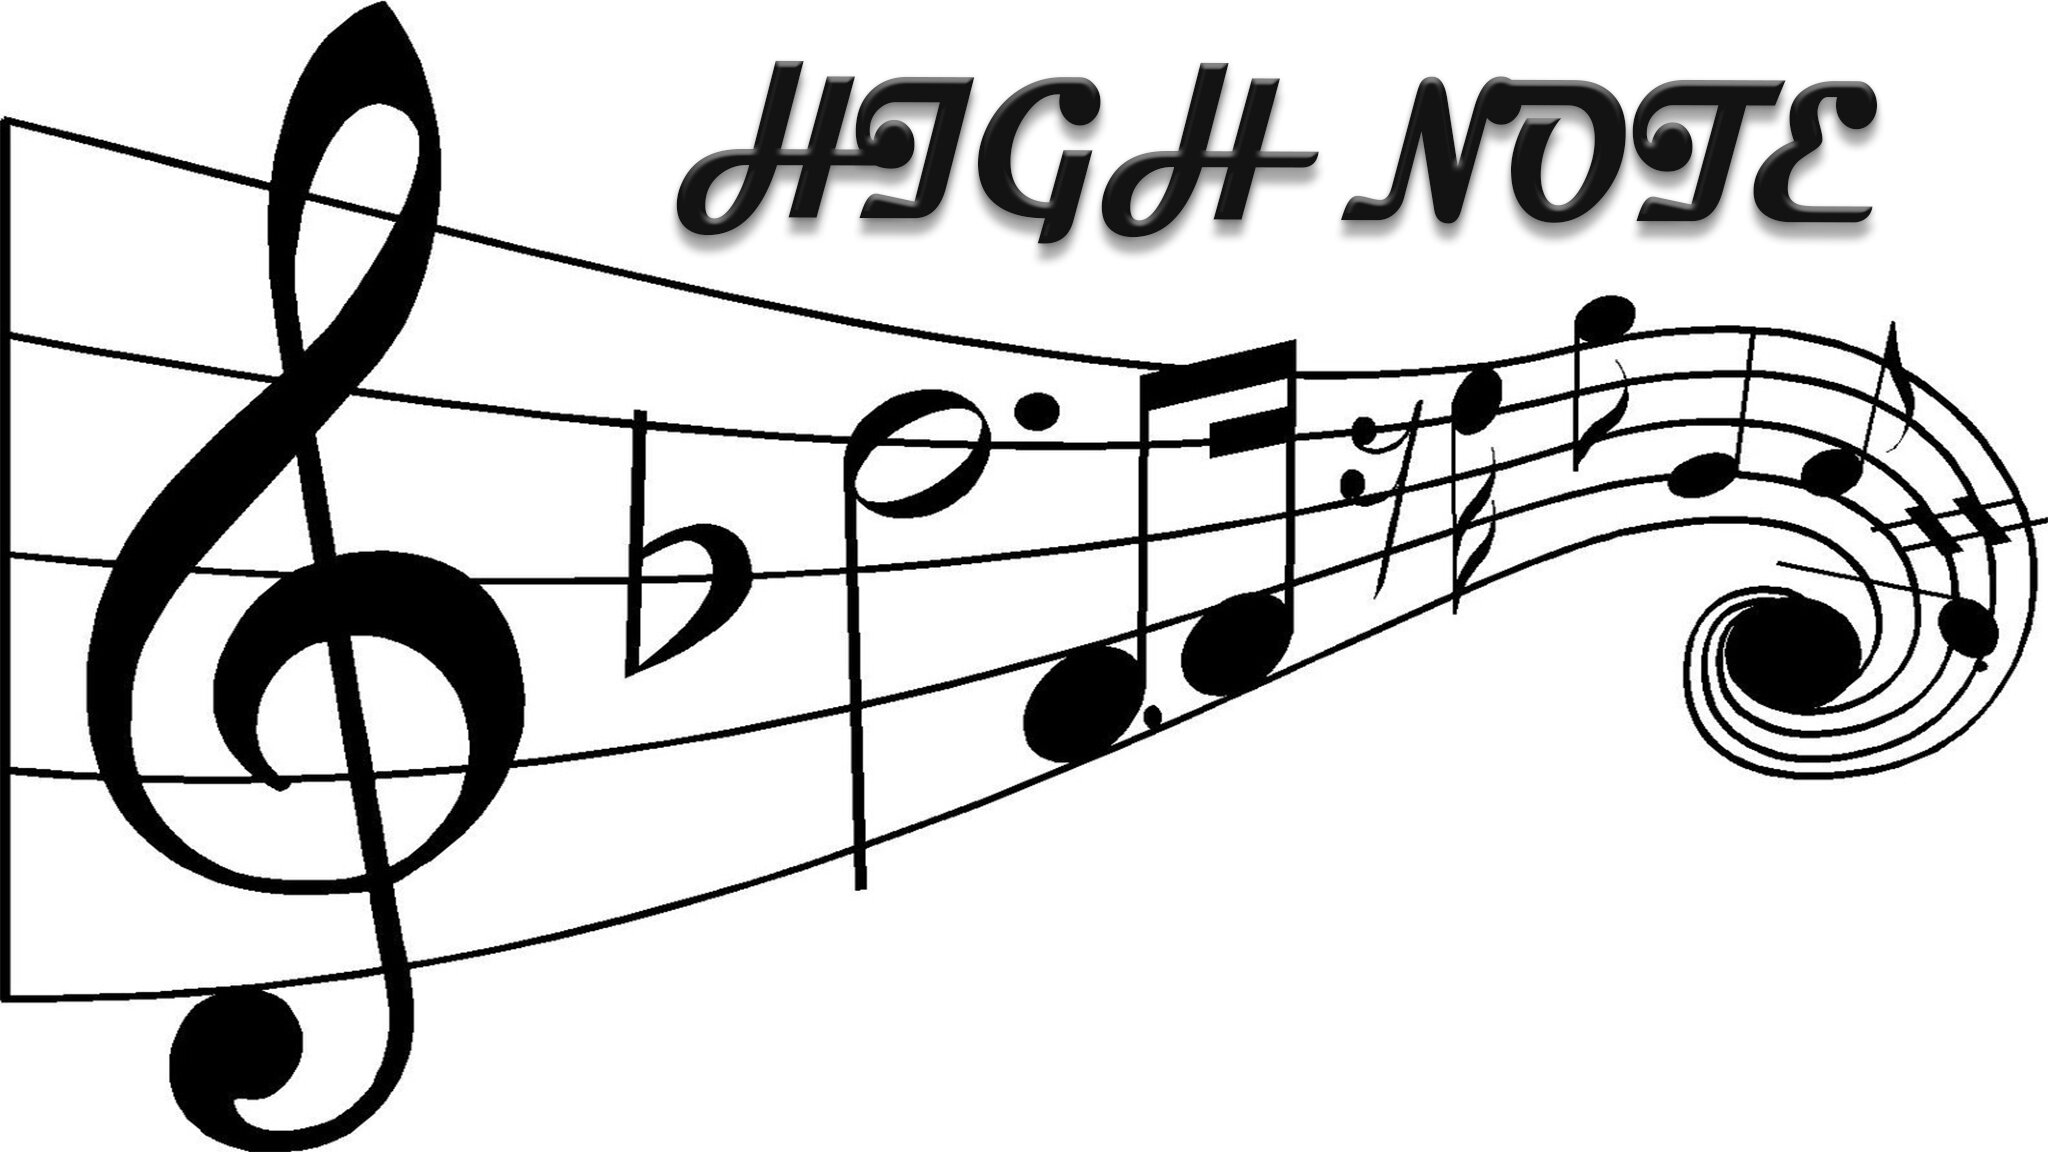 High Note Band LI